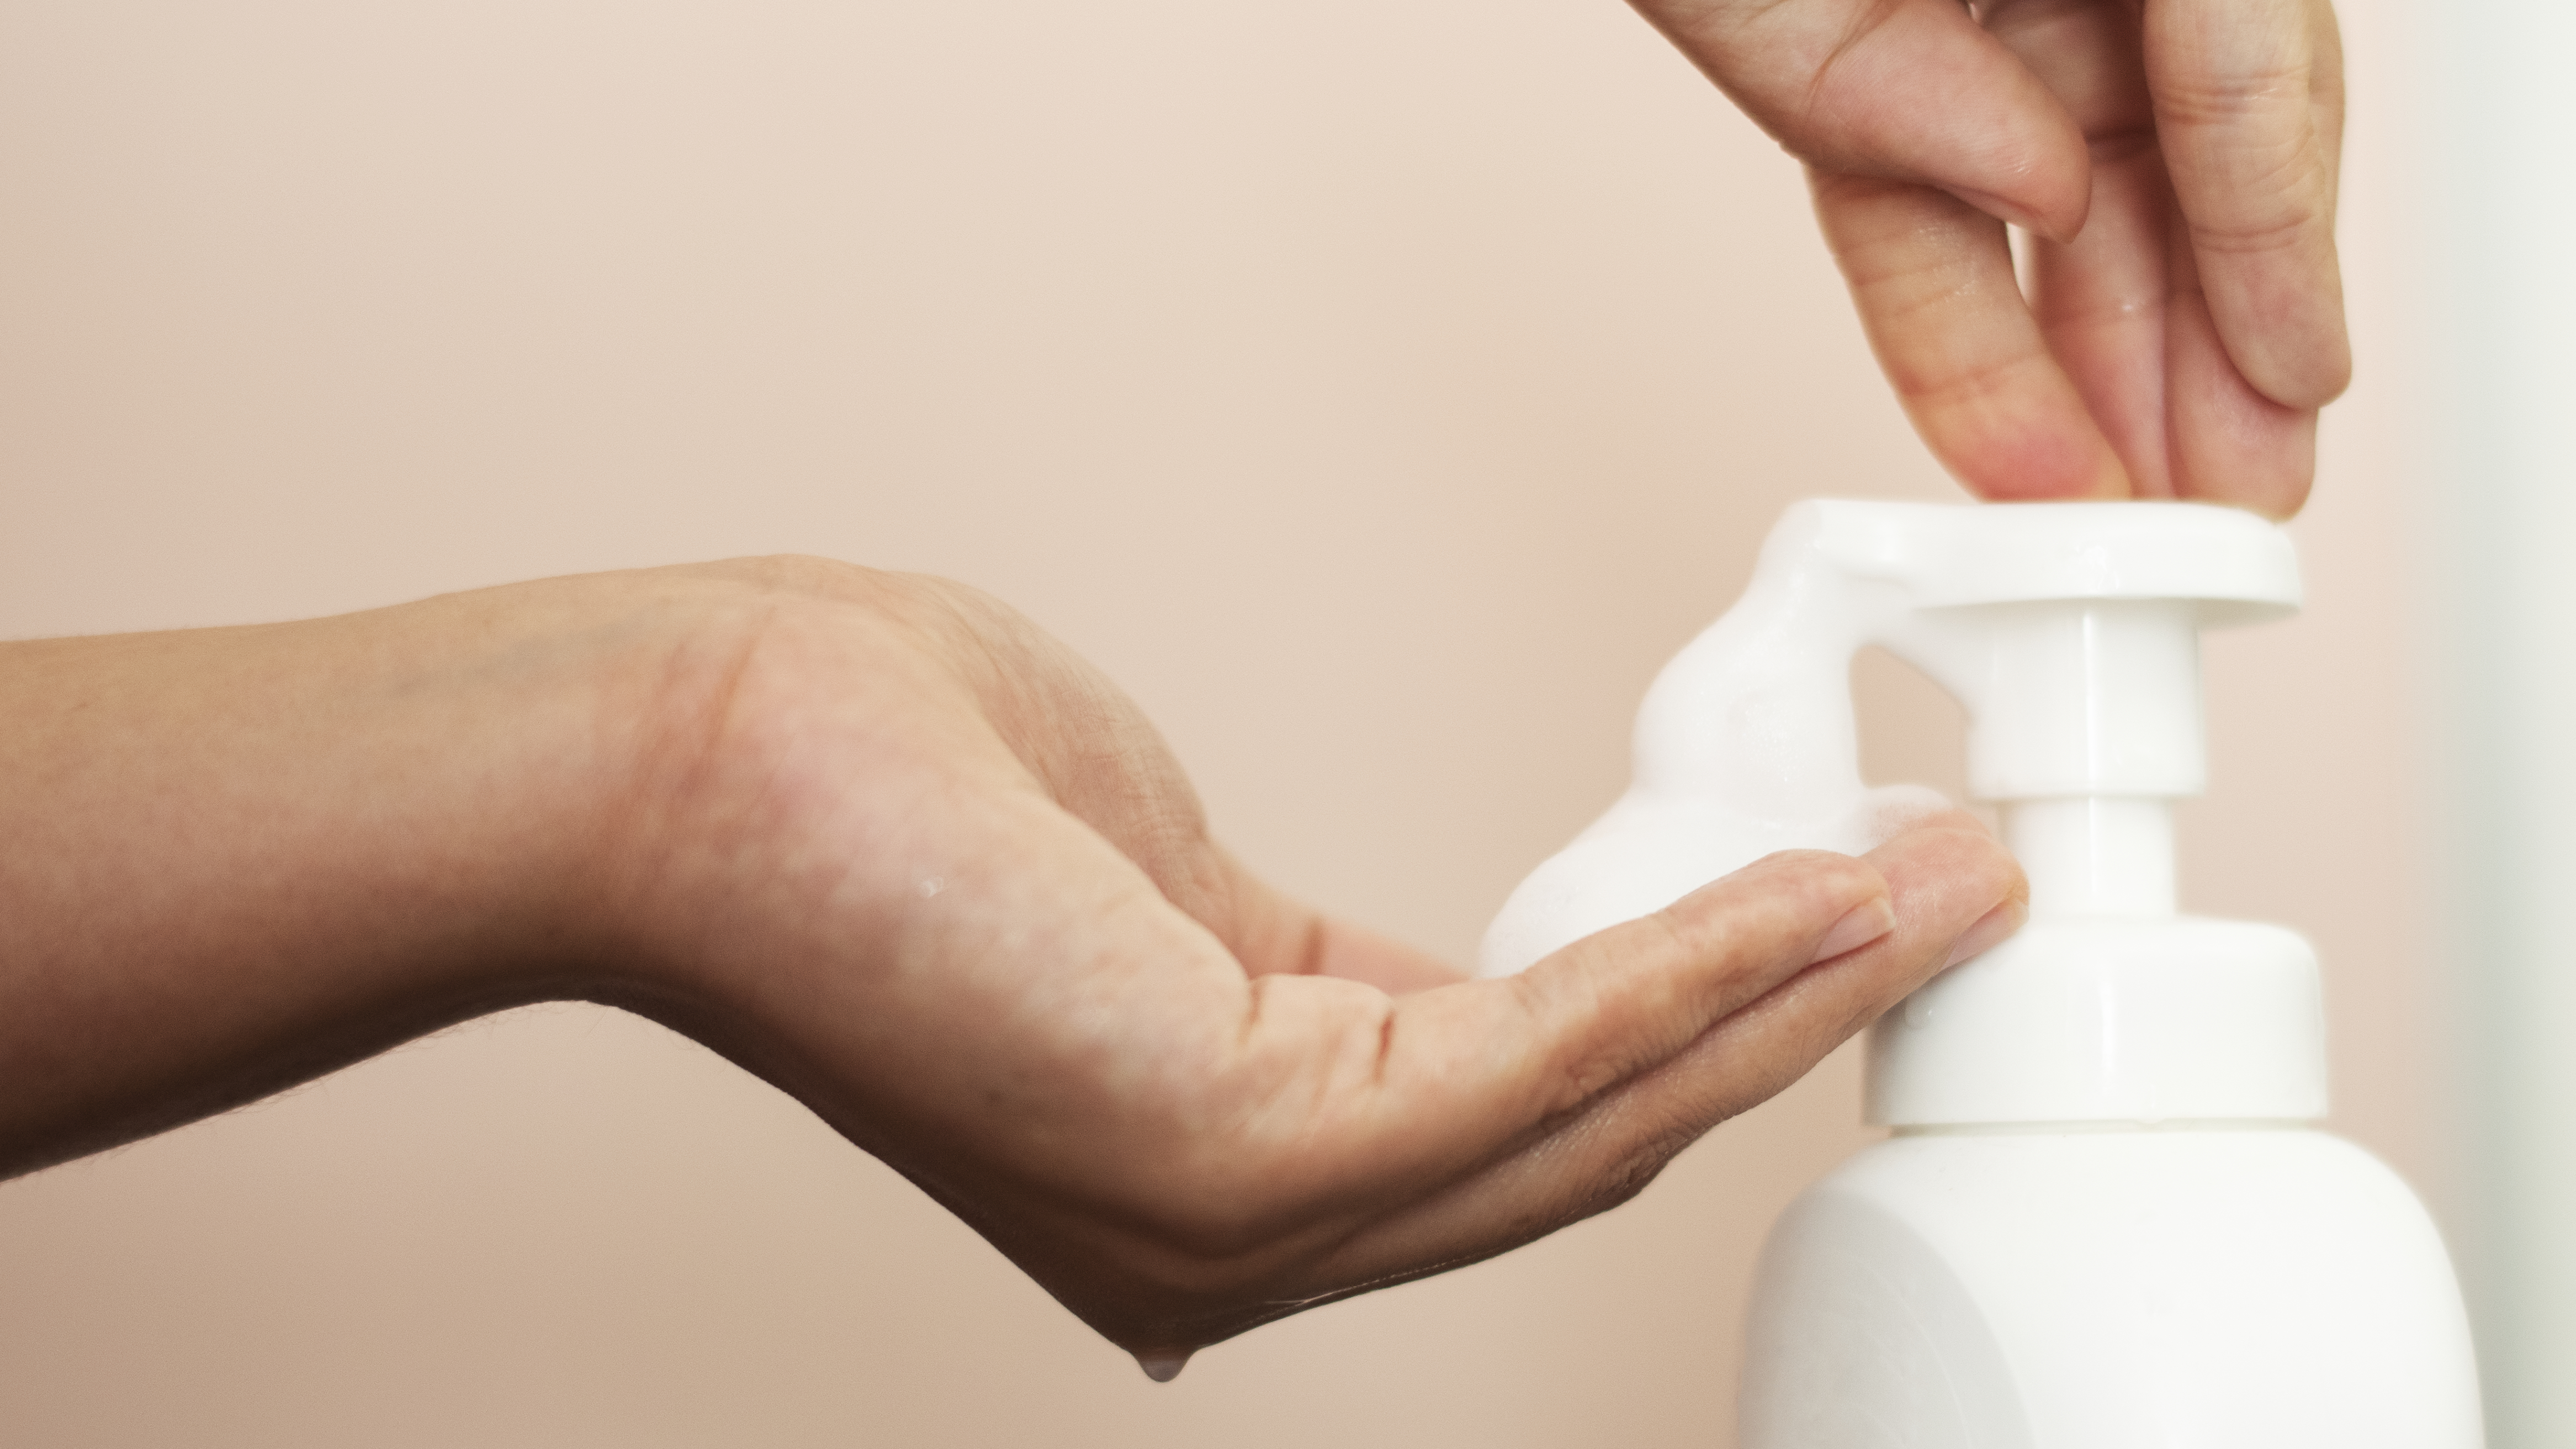 al revés sentar Adepto Es mejor el jabón de manos en espuma? | LimpialoTodo.com